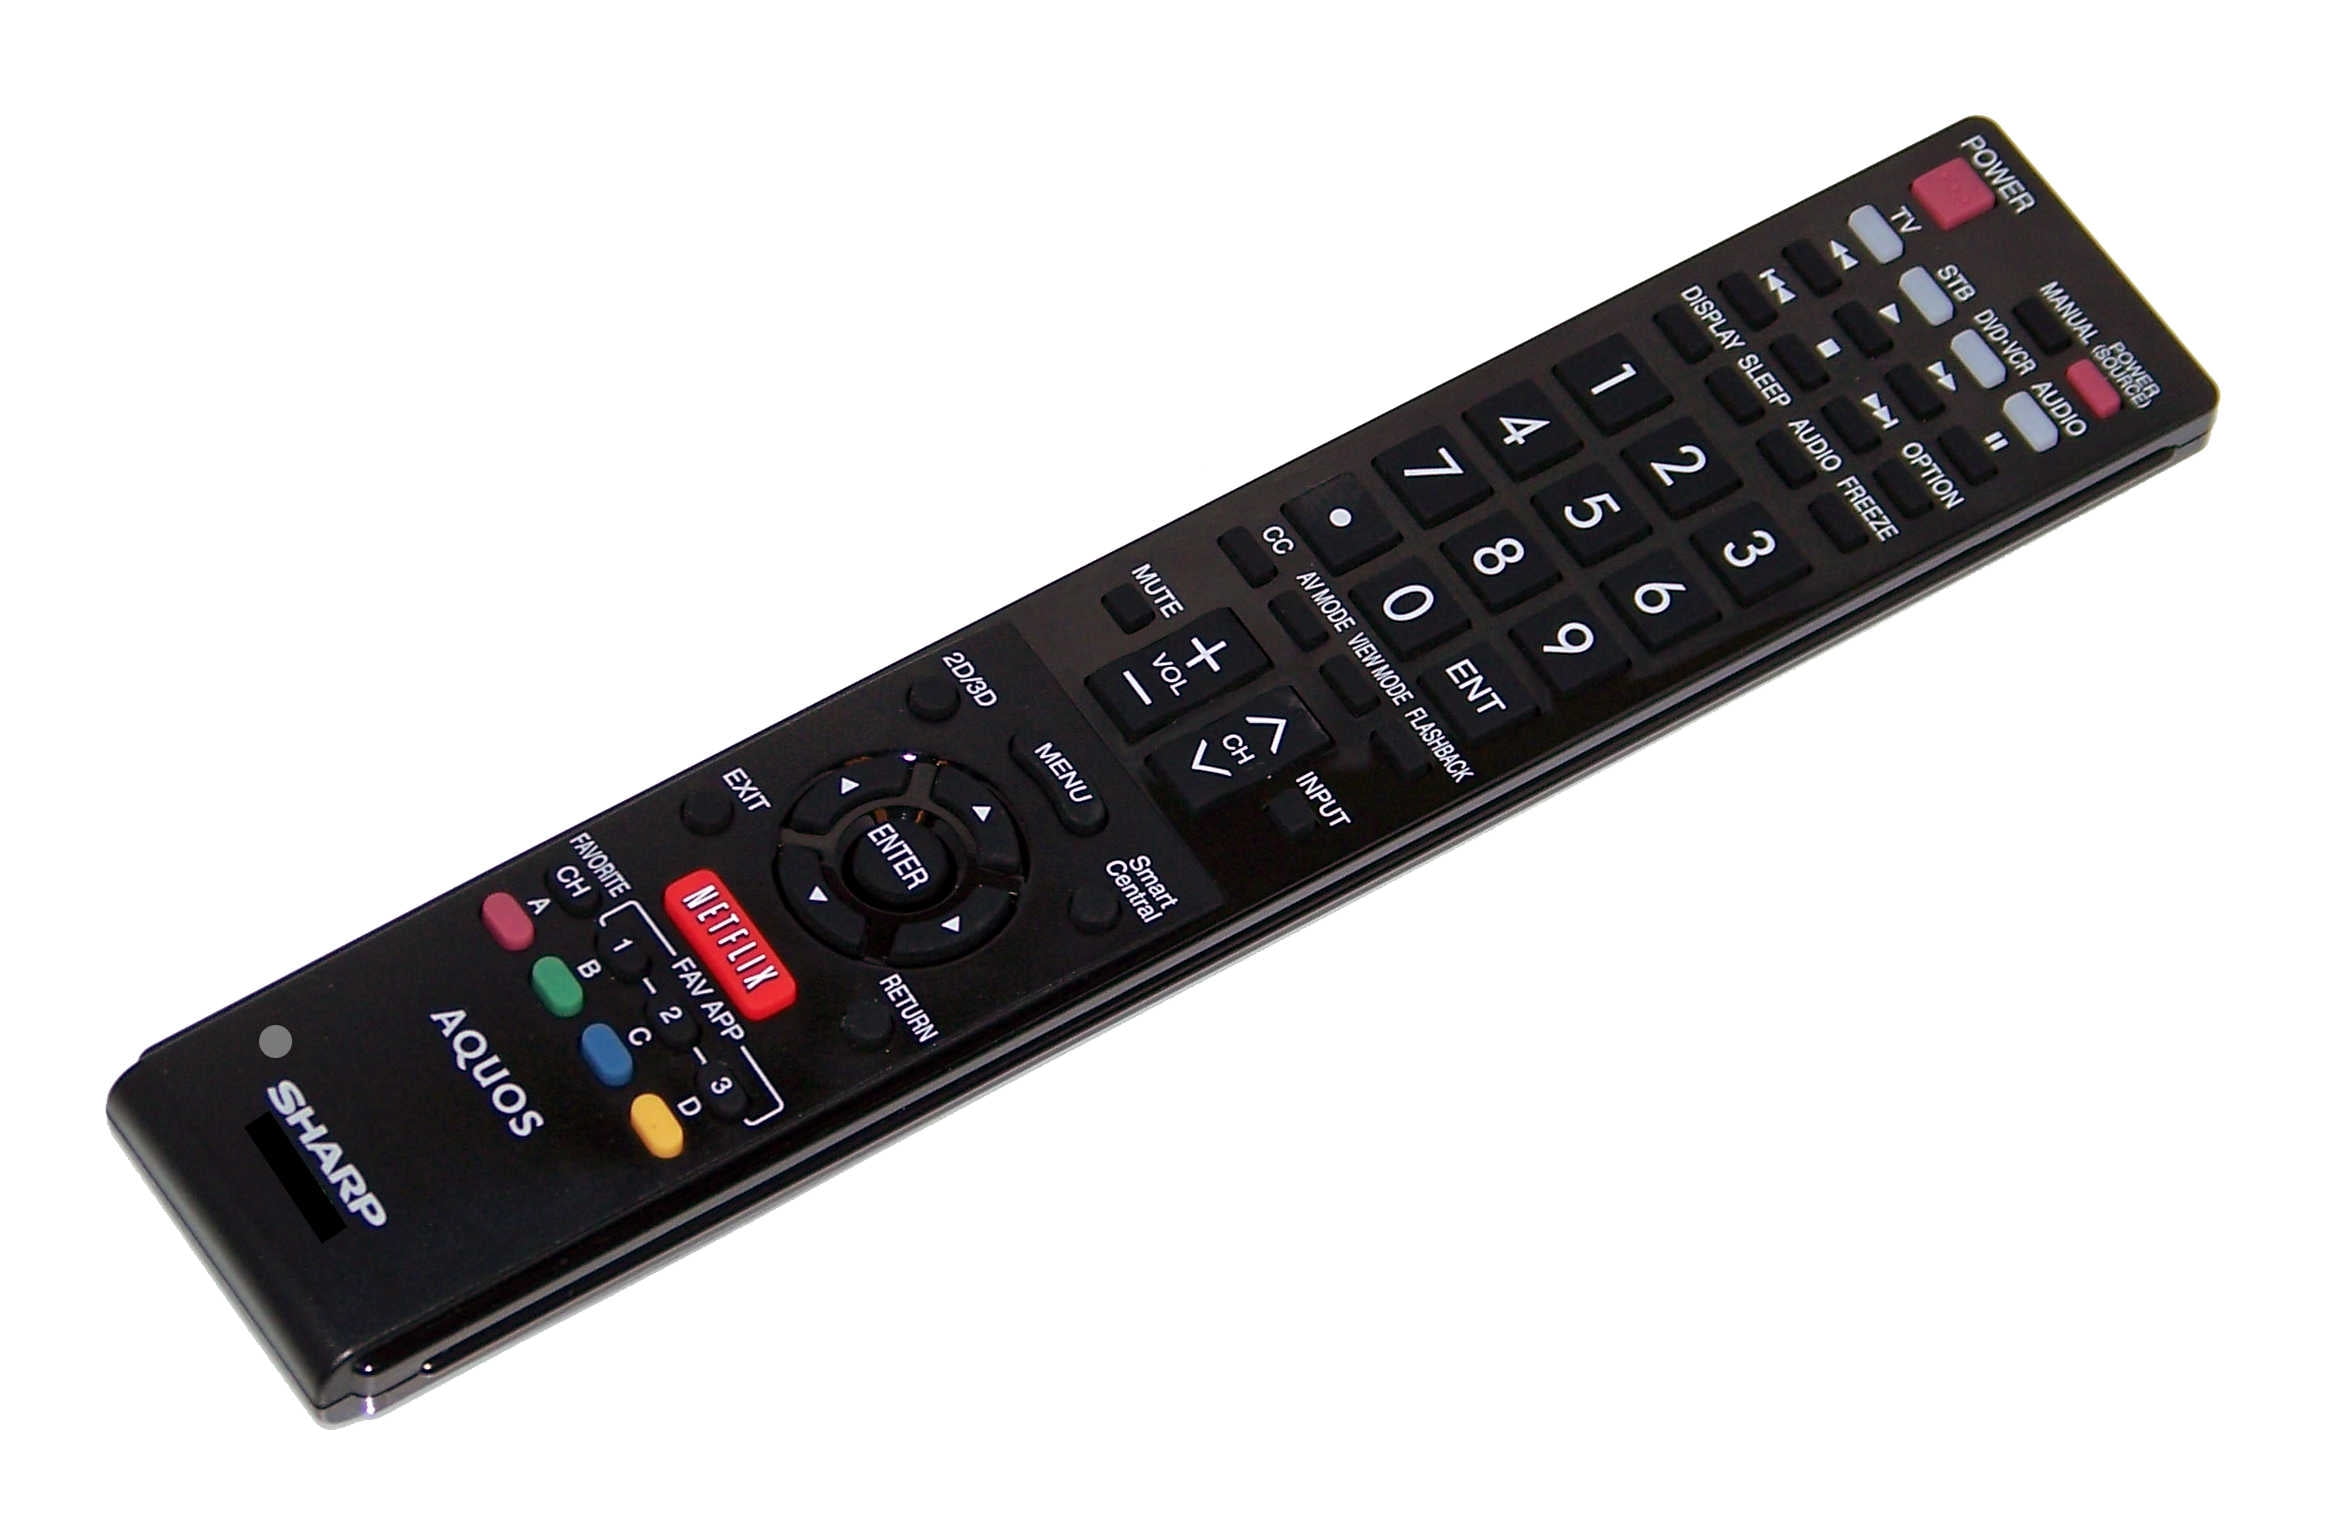 sharp aquos tv remote control code for bose